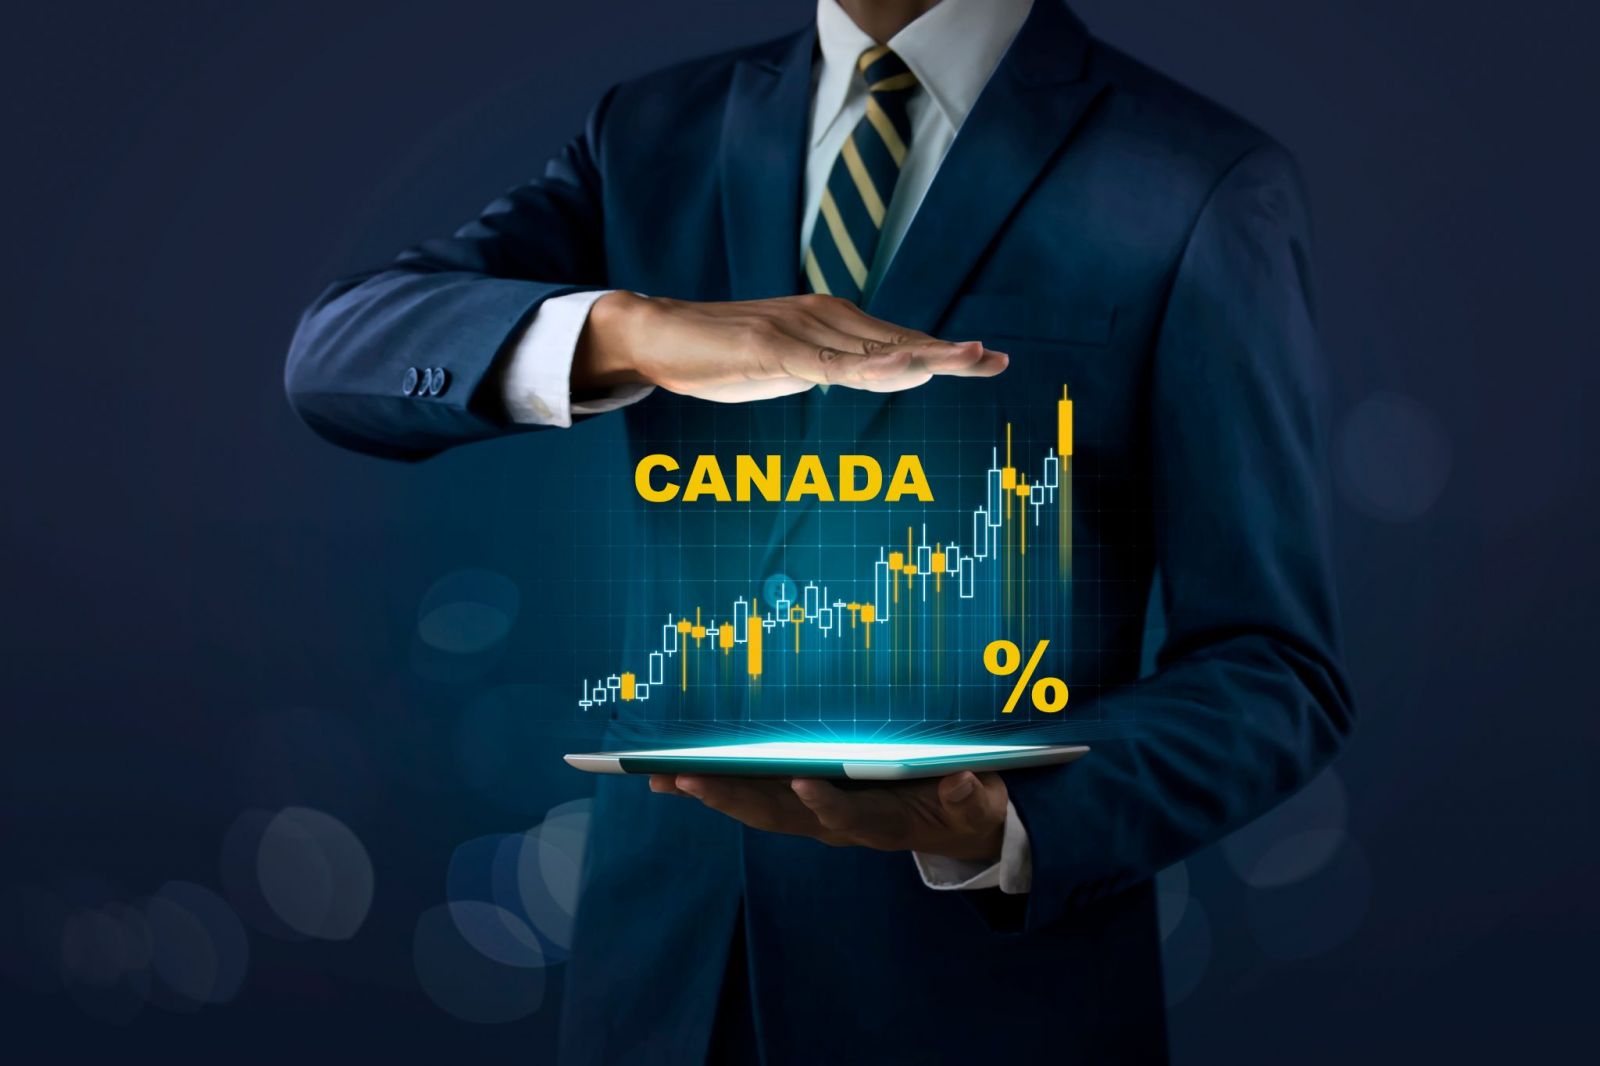 Prepárese las tasas de interés subirán rápidamente y mucho más de lo esperado en todo Canadá 